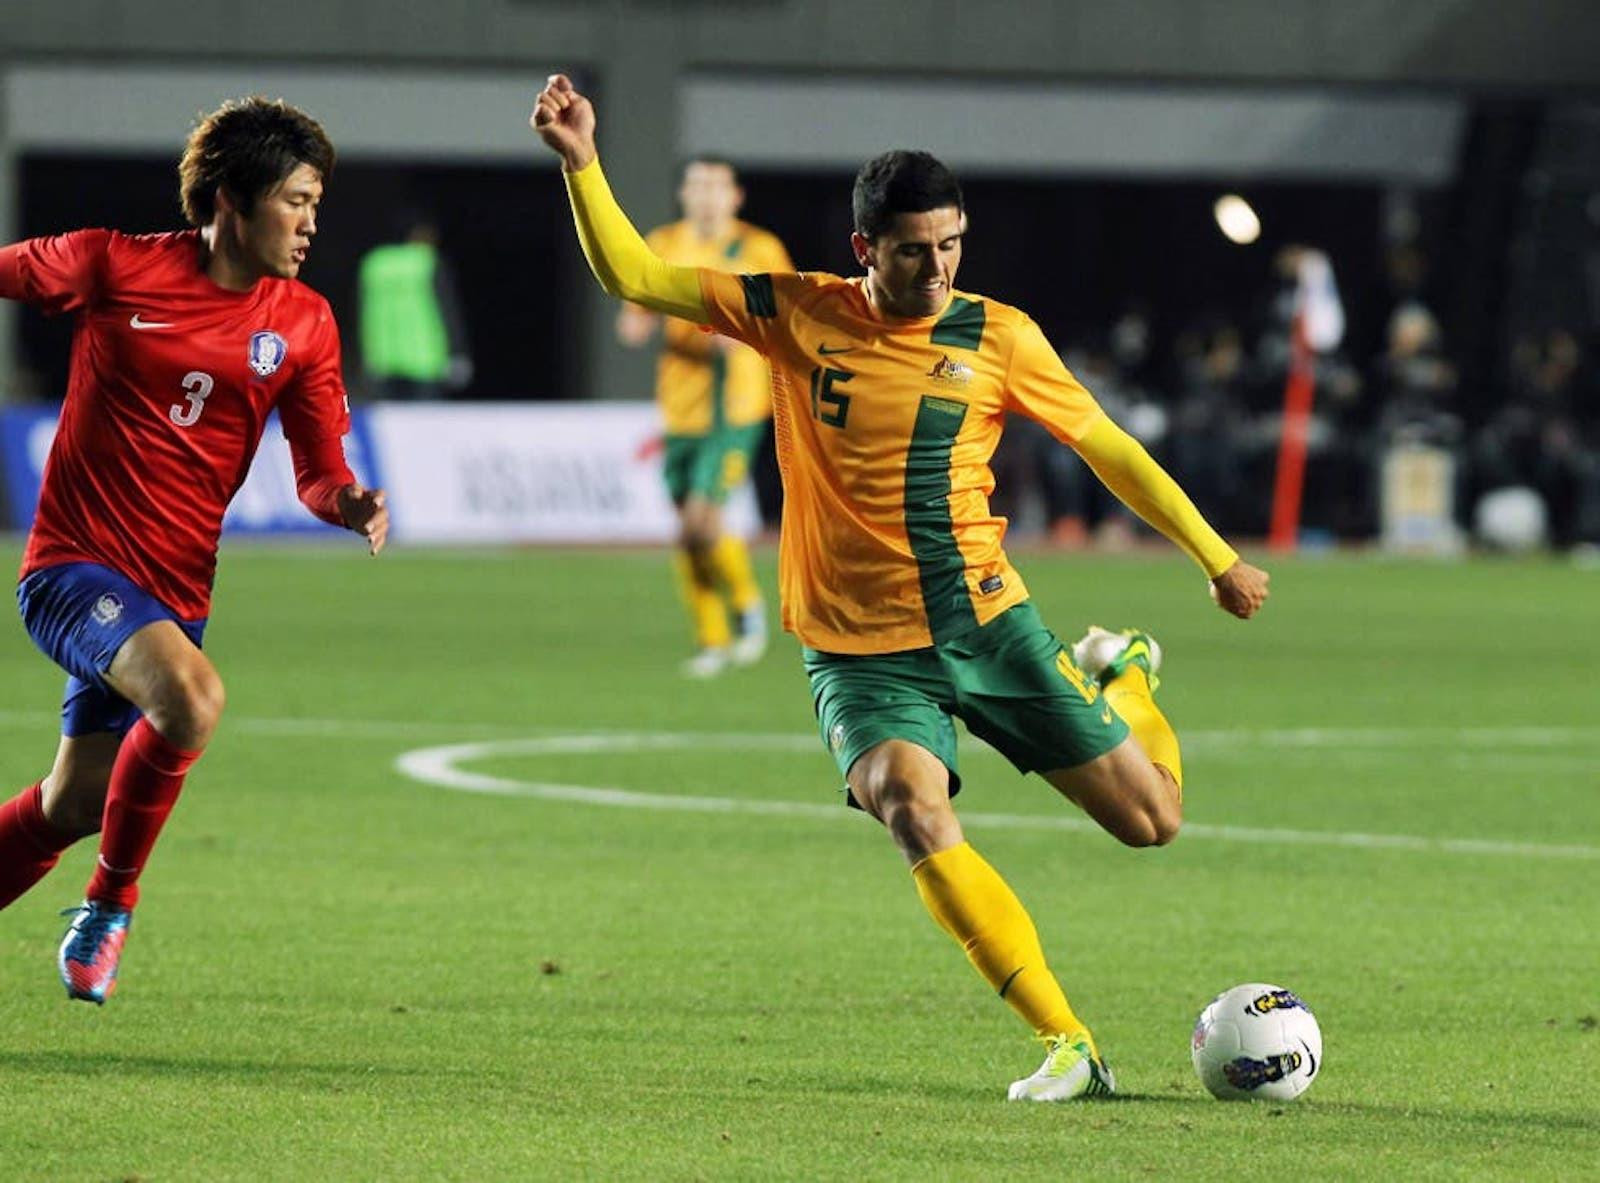 Trực tiếp bóng đá Việt Nam vs Australia vòng loại World Cup 2022 khu vực châu Á - 2